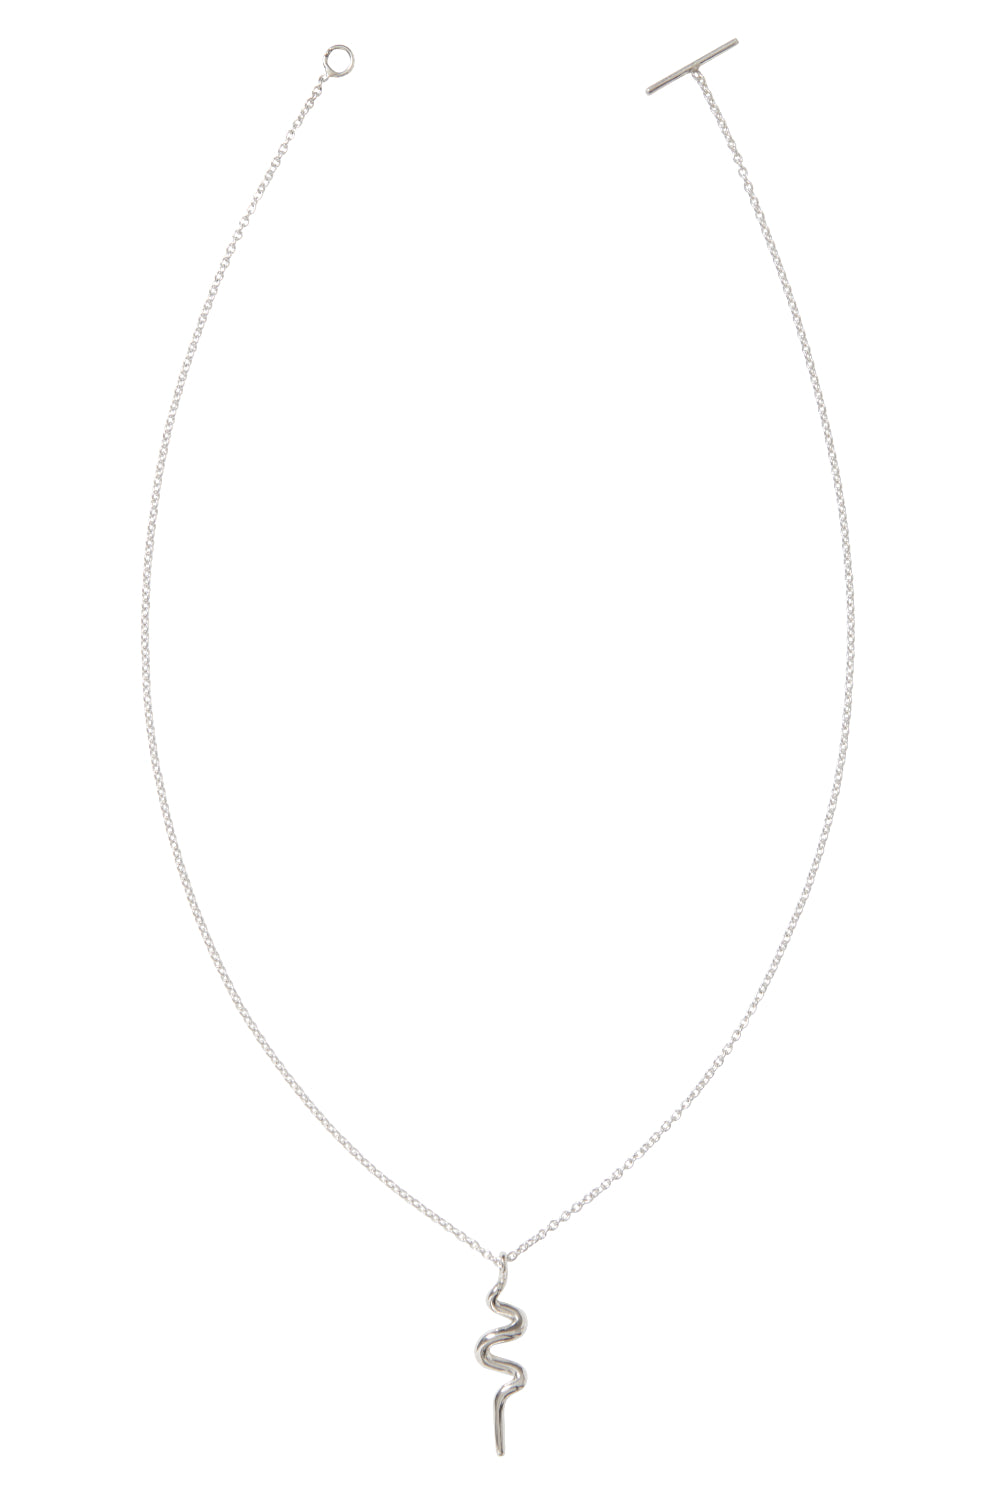 Halskette in silber mit einem handgefertigten Anhänger. Die gesamte Kette mit dem Verschluss ist von ober auf weißem Hintergrund zu erkennen.